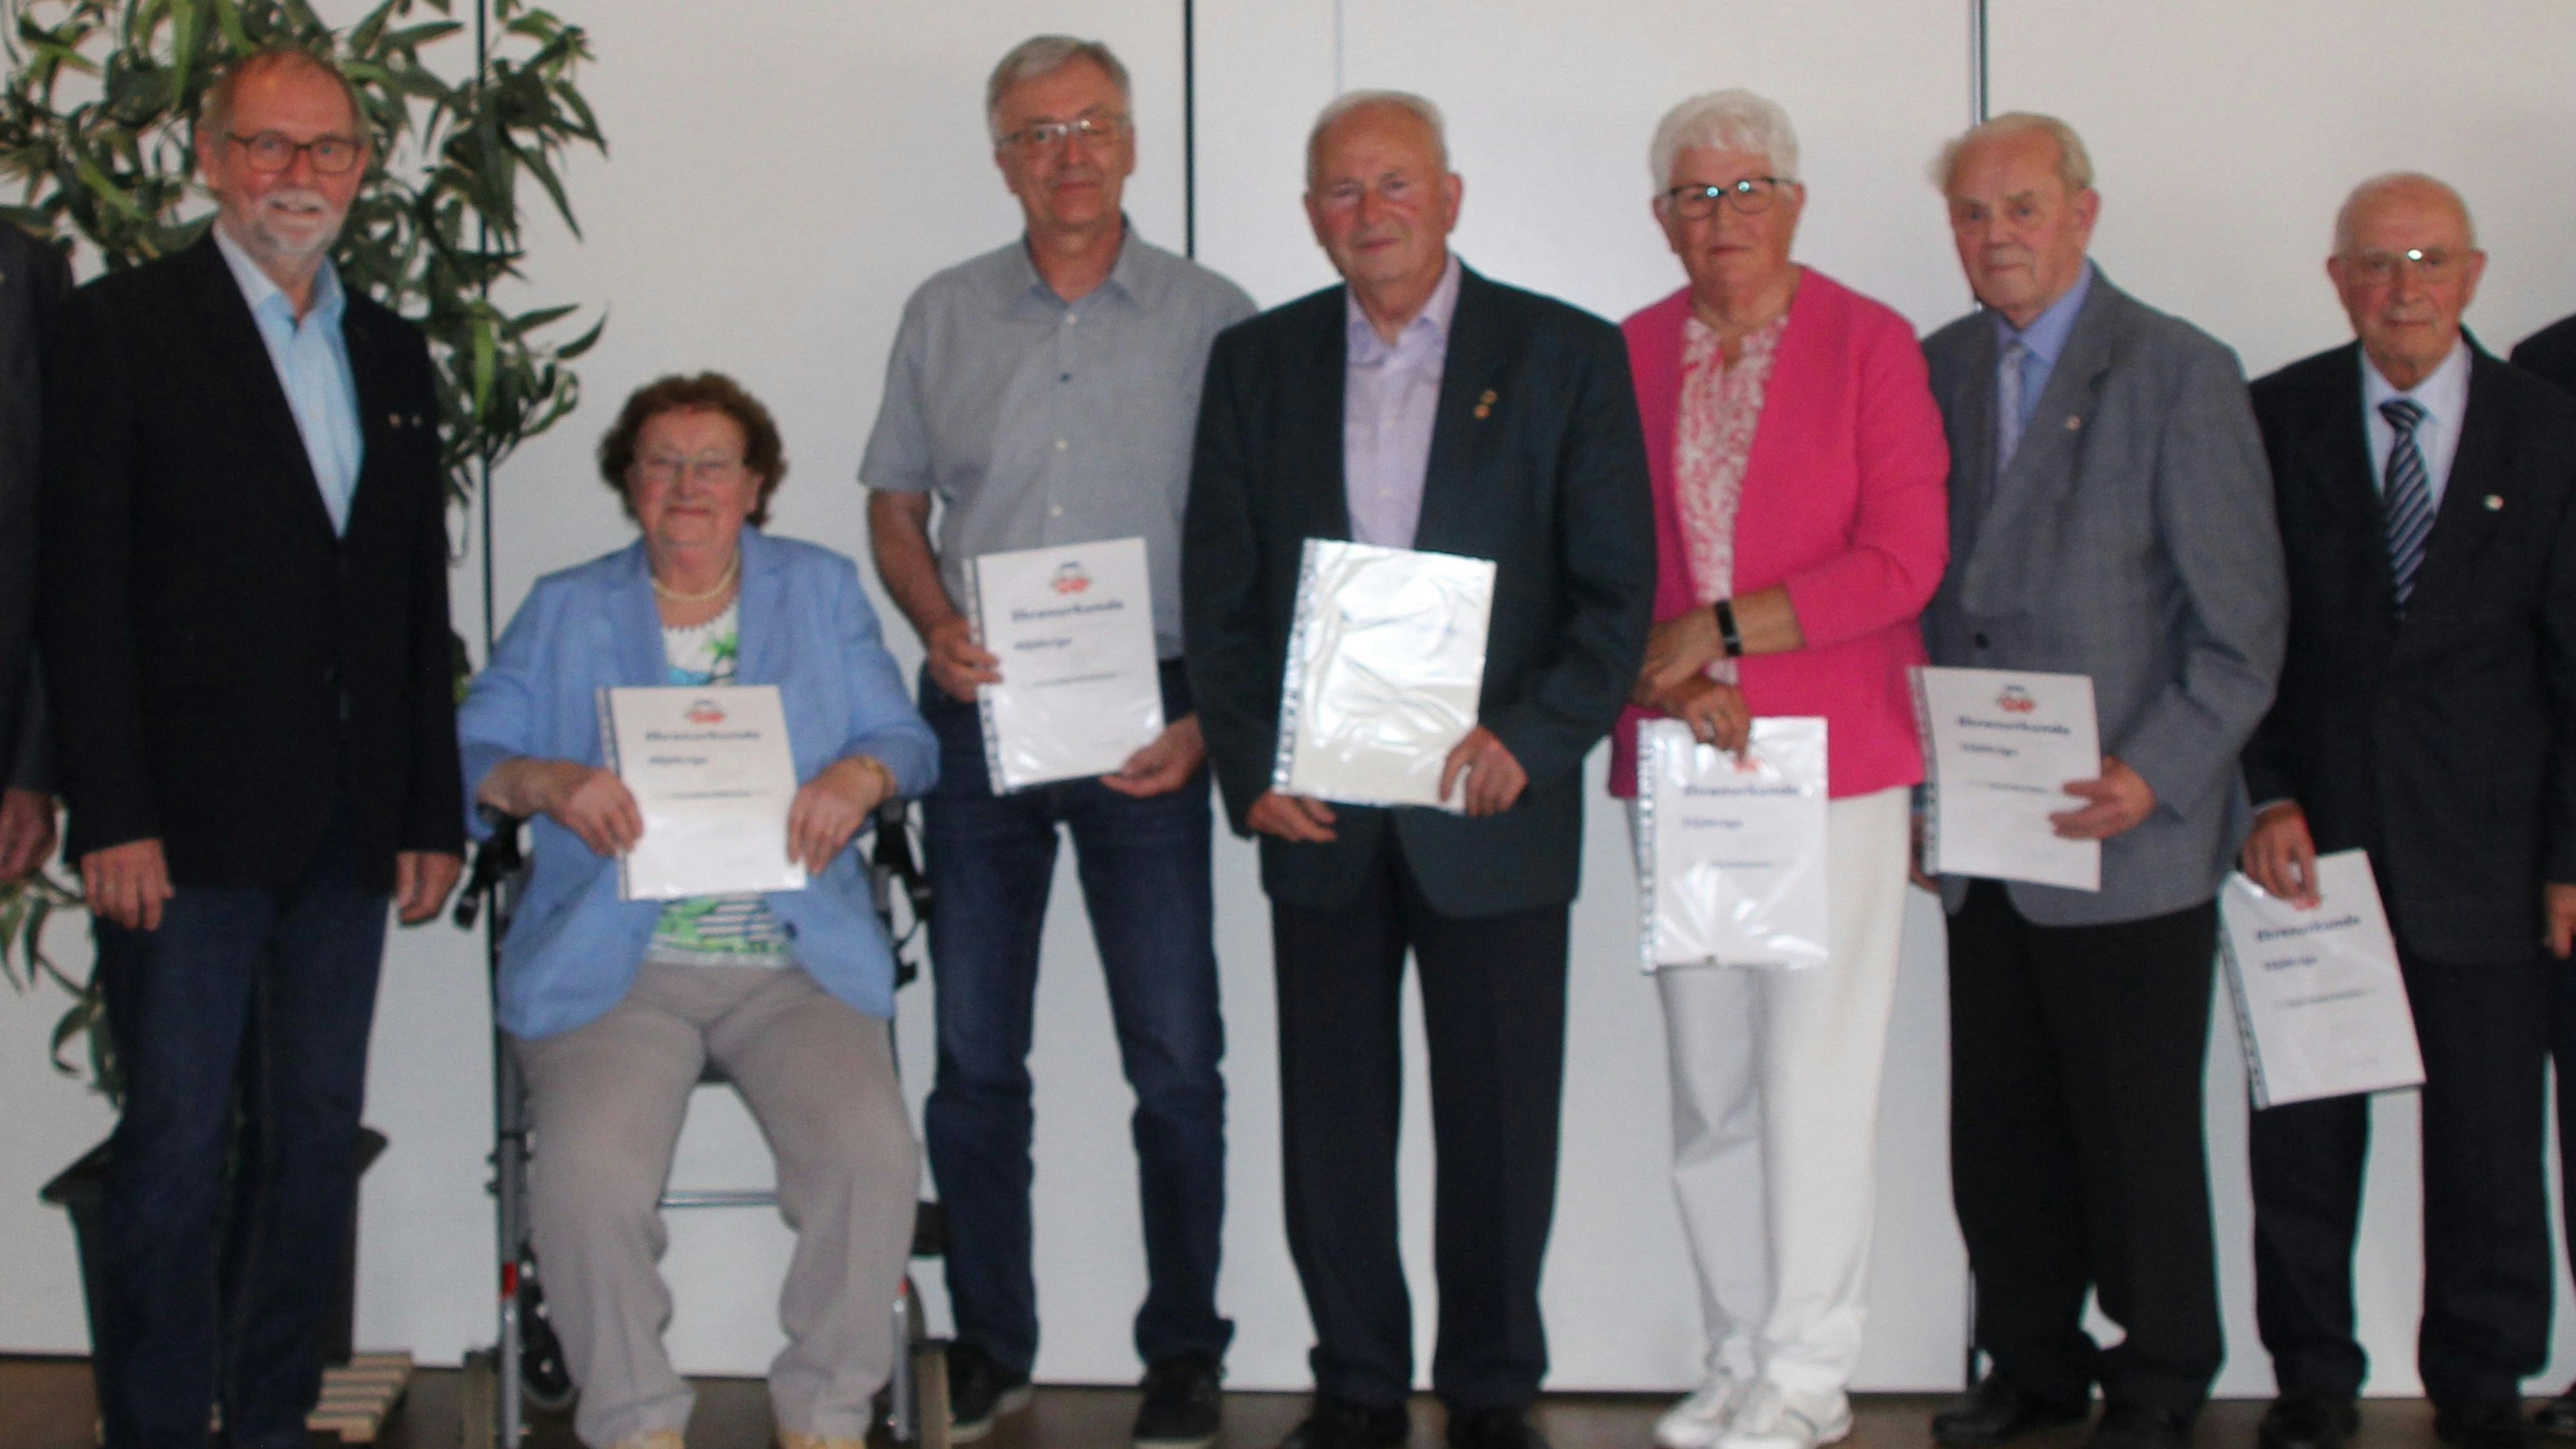 Ausgezeichnet: Für ihre langjährige Mitgliedschaft konnte Franz Emke (links) insgesamt 80 Mitglieder ehren. Foto: Högemann